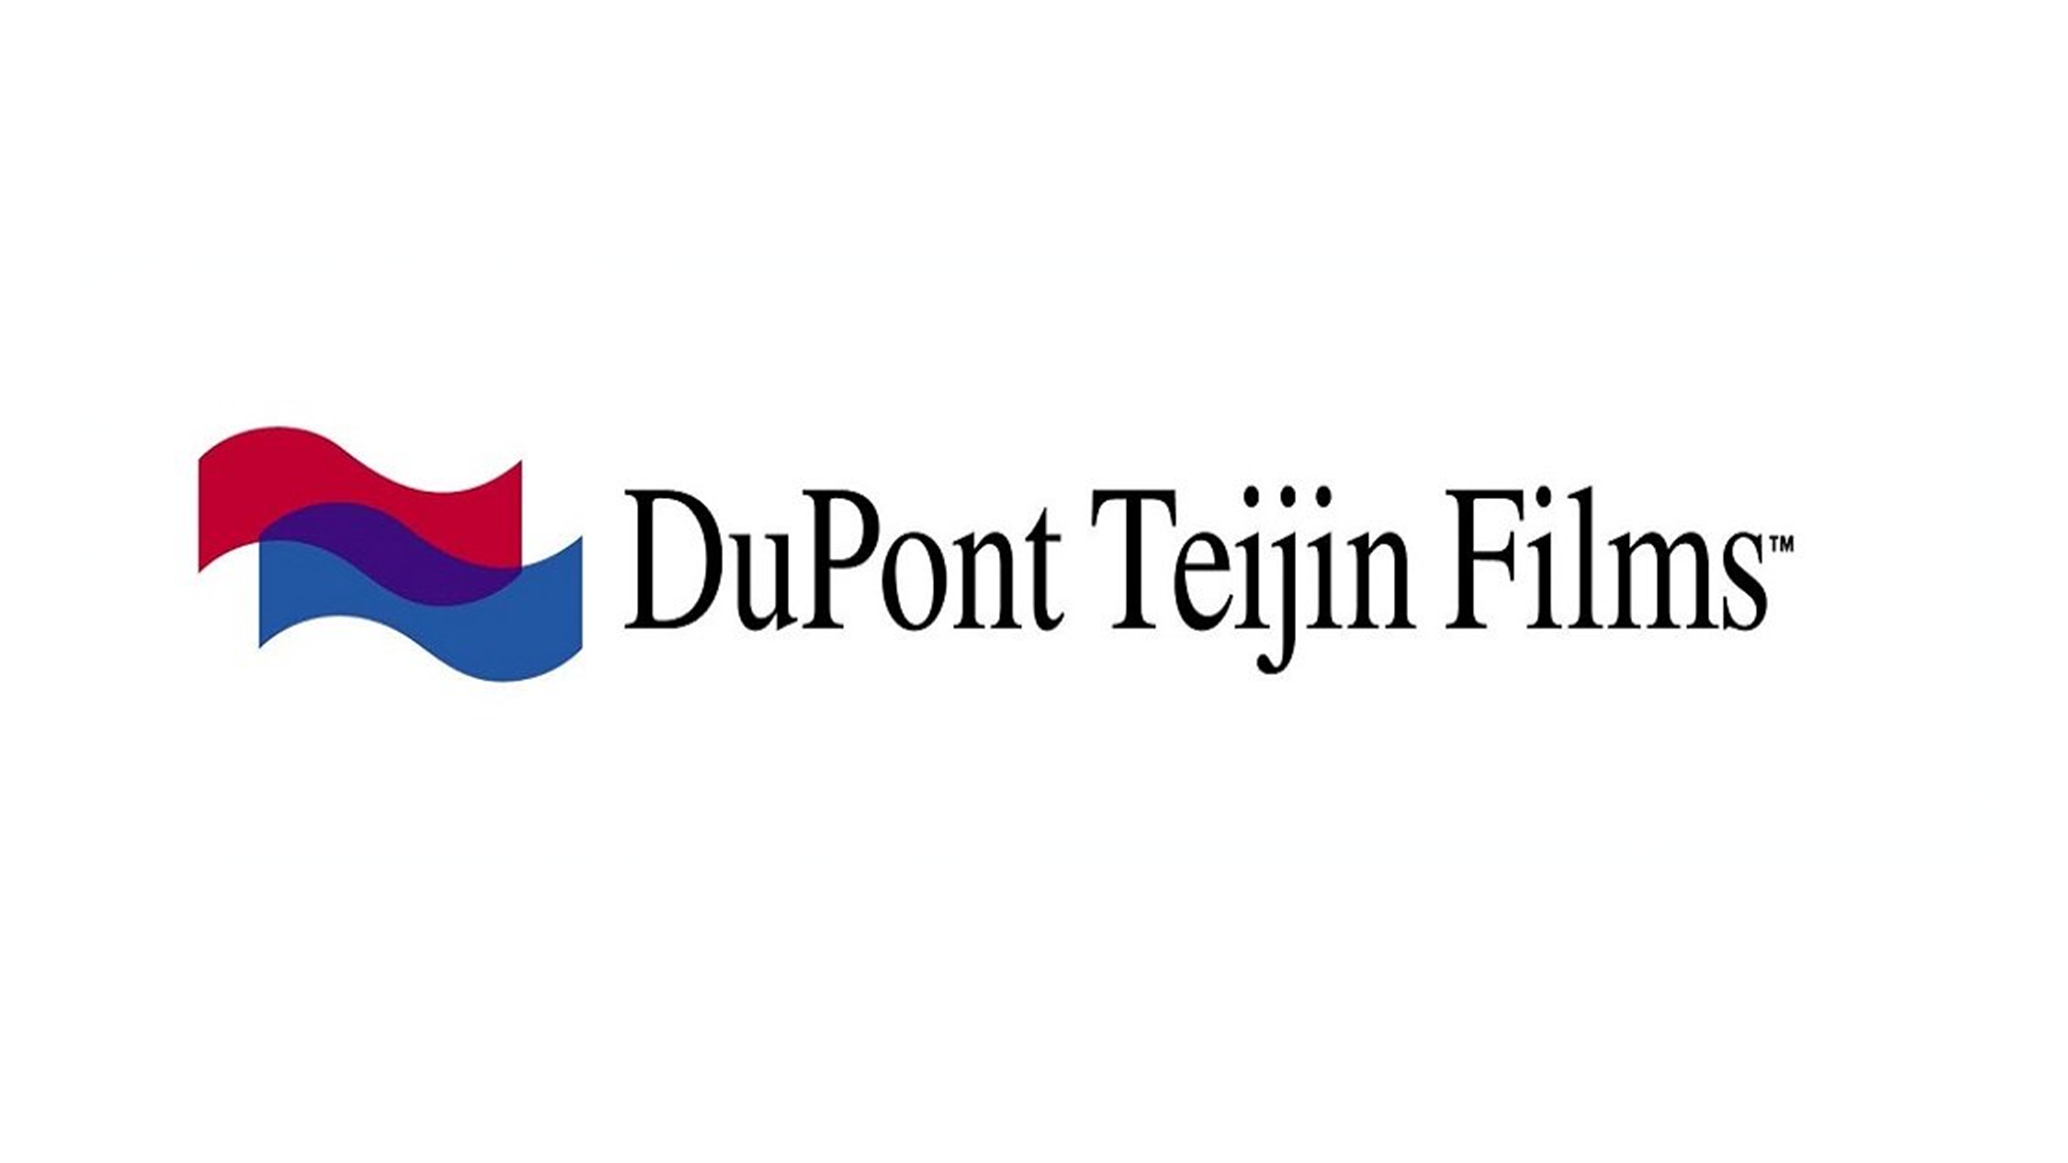 Dupont Teijin Films